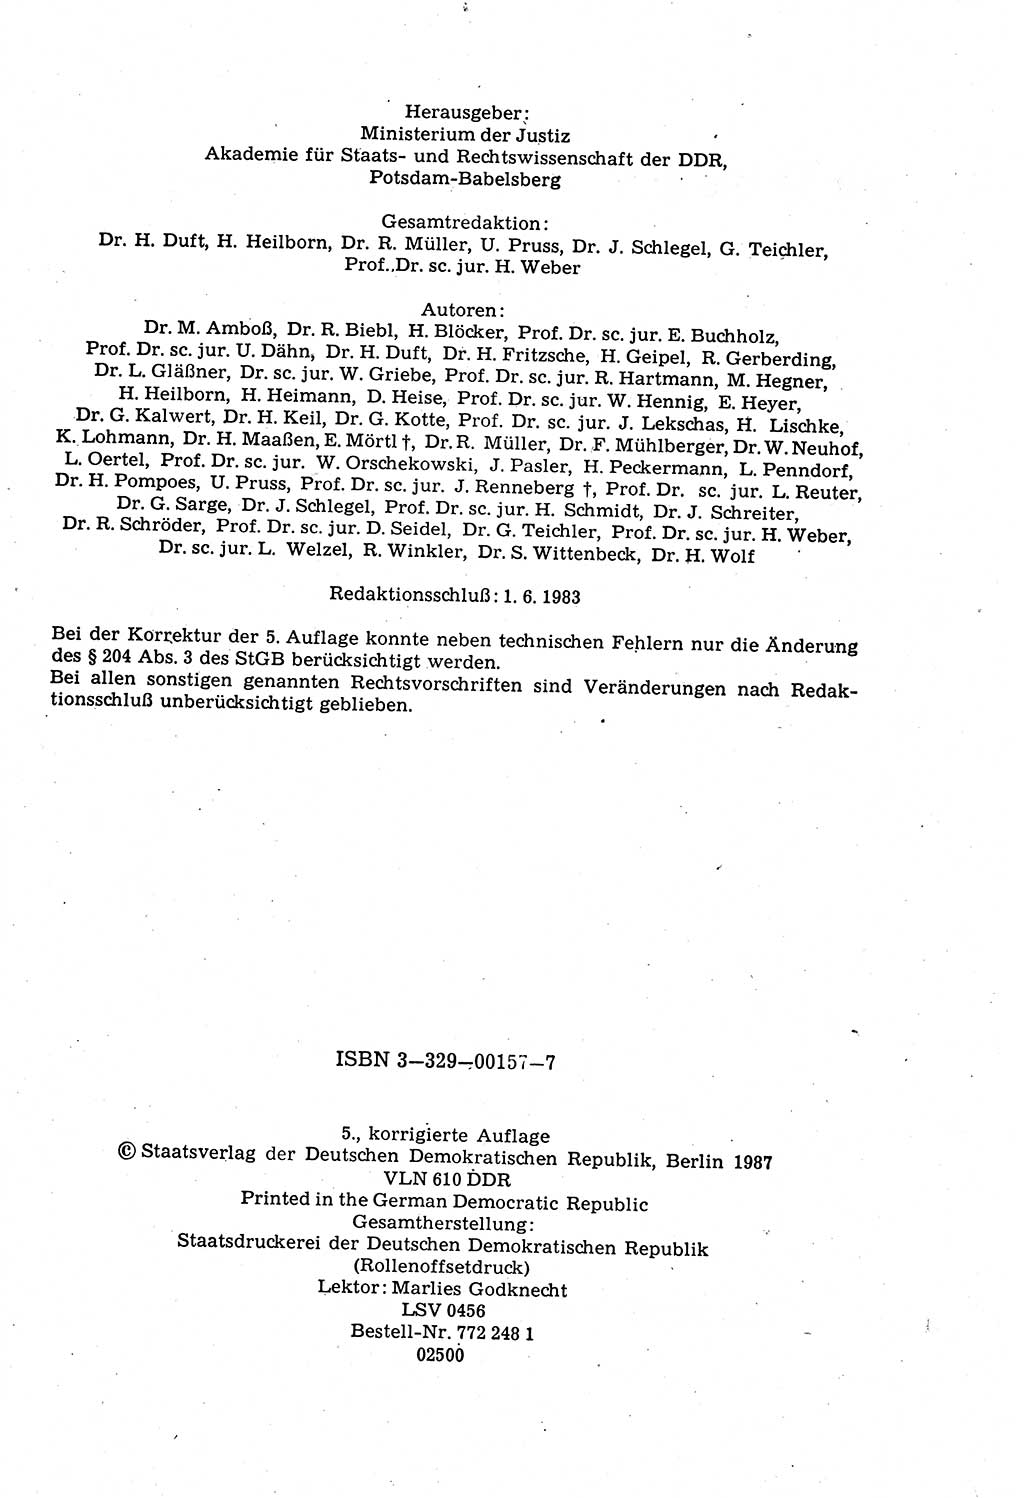 Strafrecht der Deutschen Demokratischen Republik (DDR), Kommentar zum Strafgesetzbuch (StGB) 1987, Seite 4 (Strafr. DDR Komm. StGB 1987, S. 4)